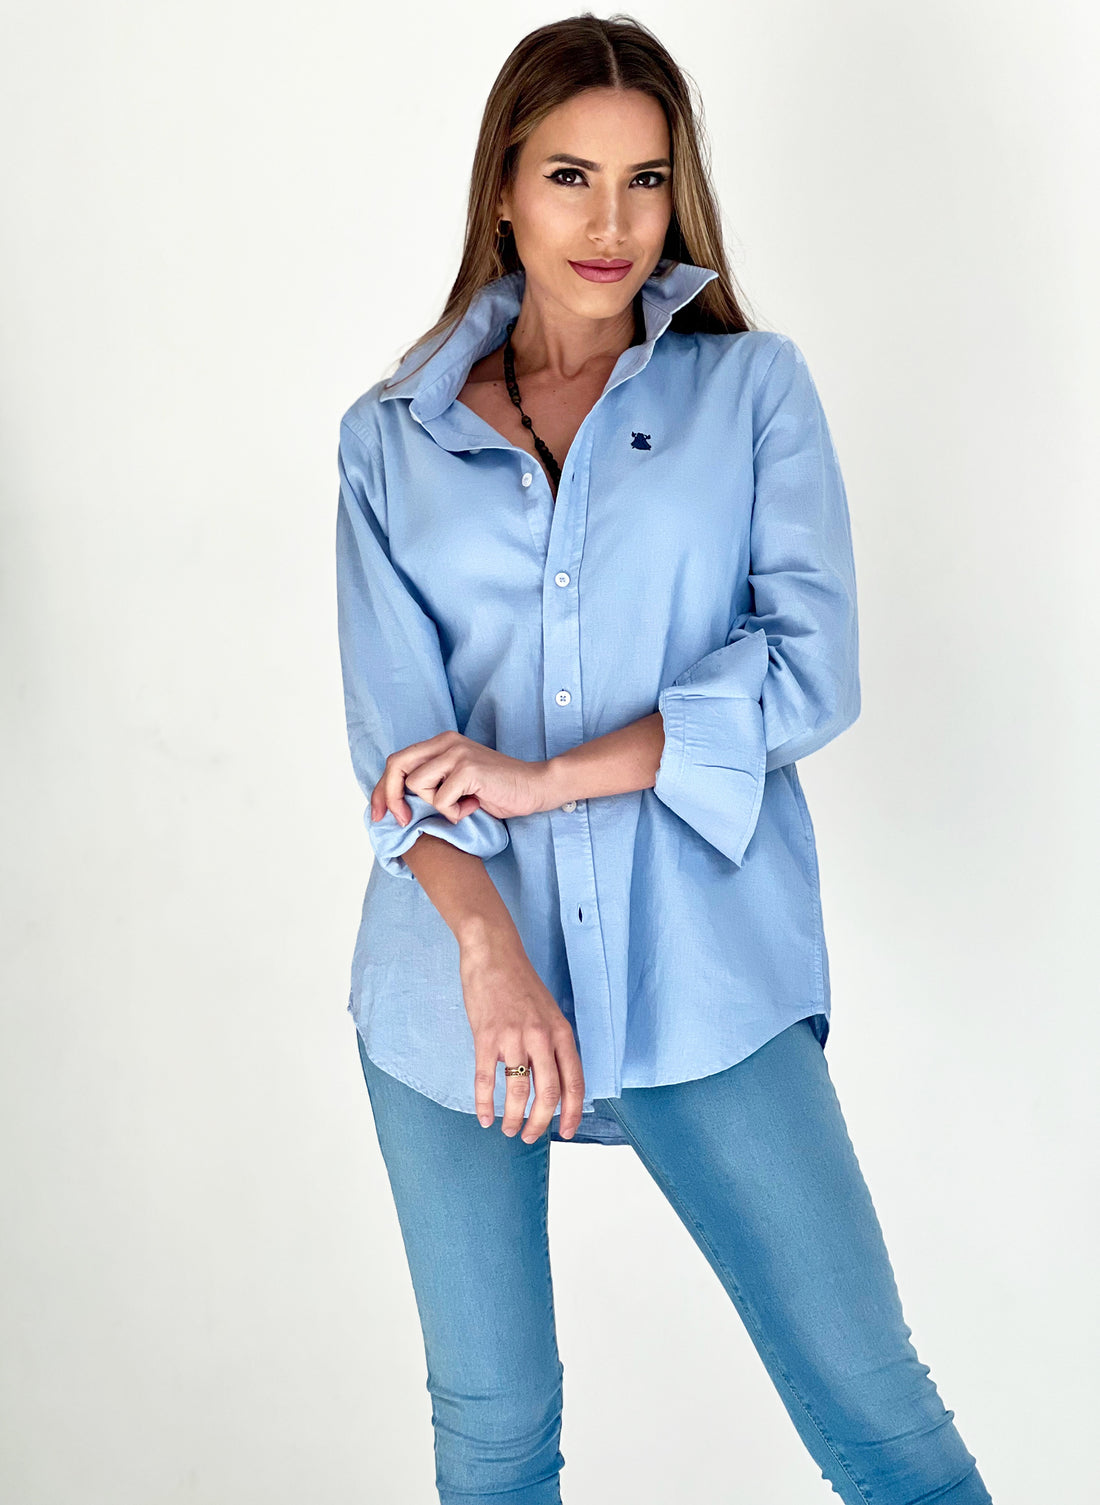 Chemise teintée bleu clair en vêtement pour femme